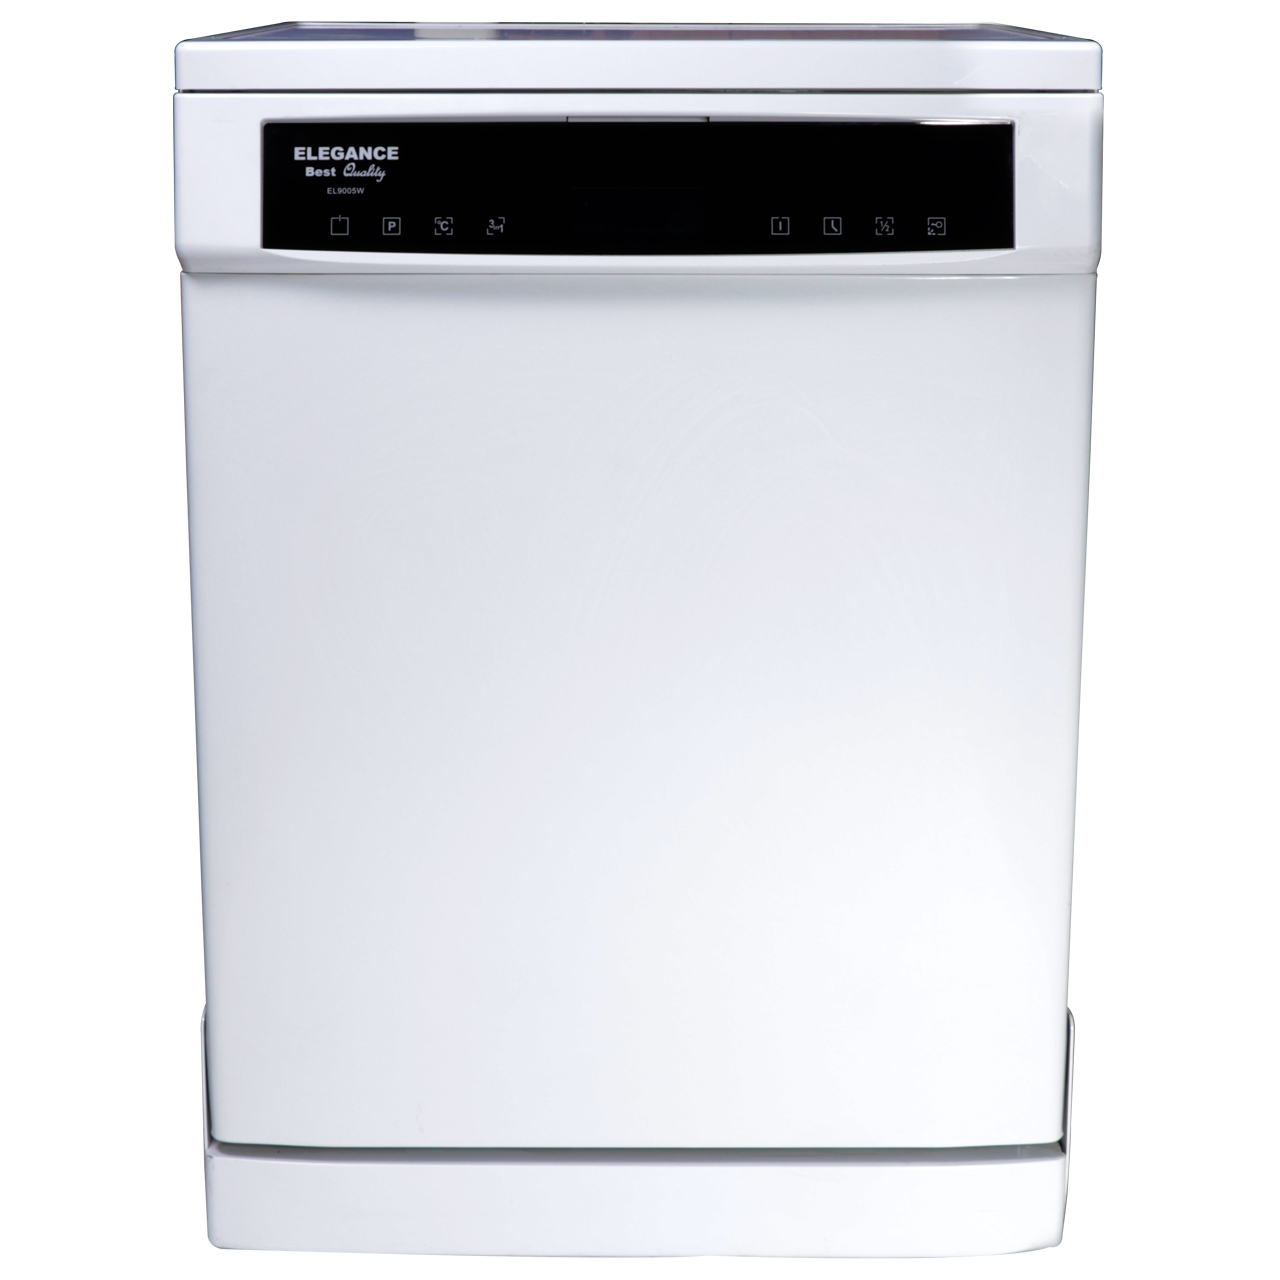 ماشین ظرفشویی الگانس مدل EL9005 مناسب برای 12 نفر